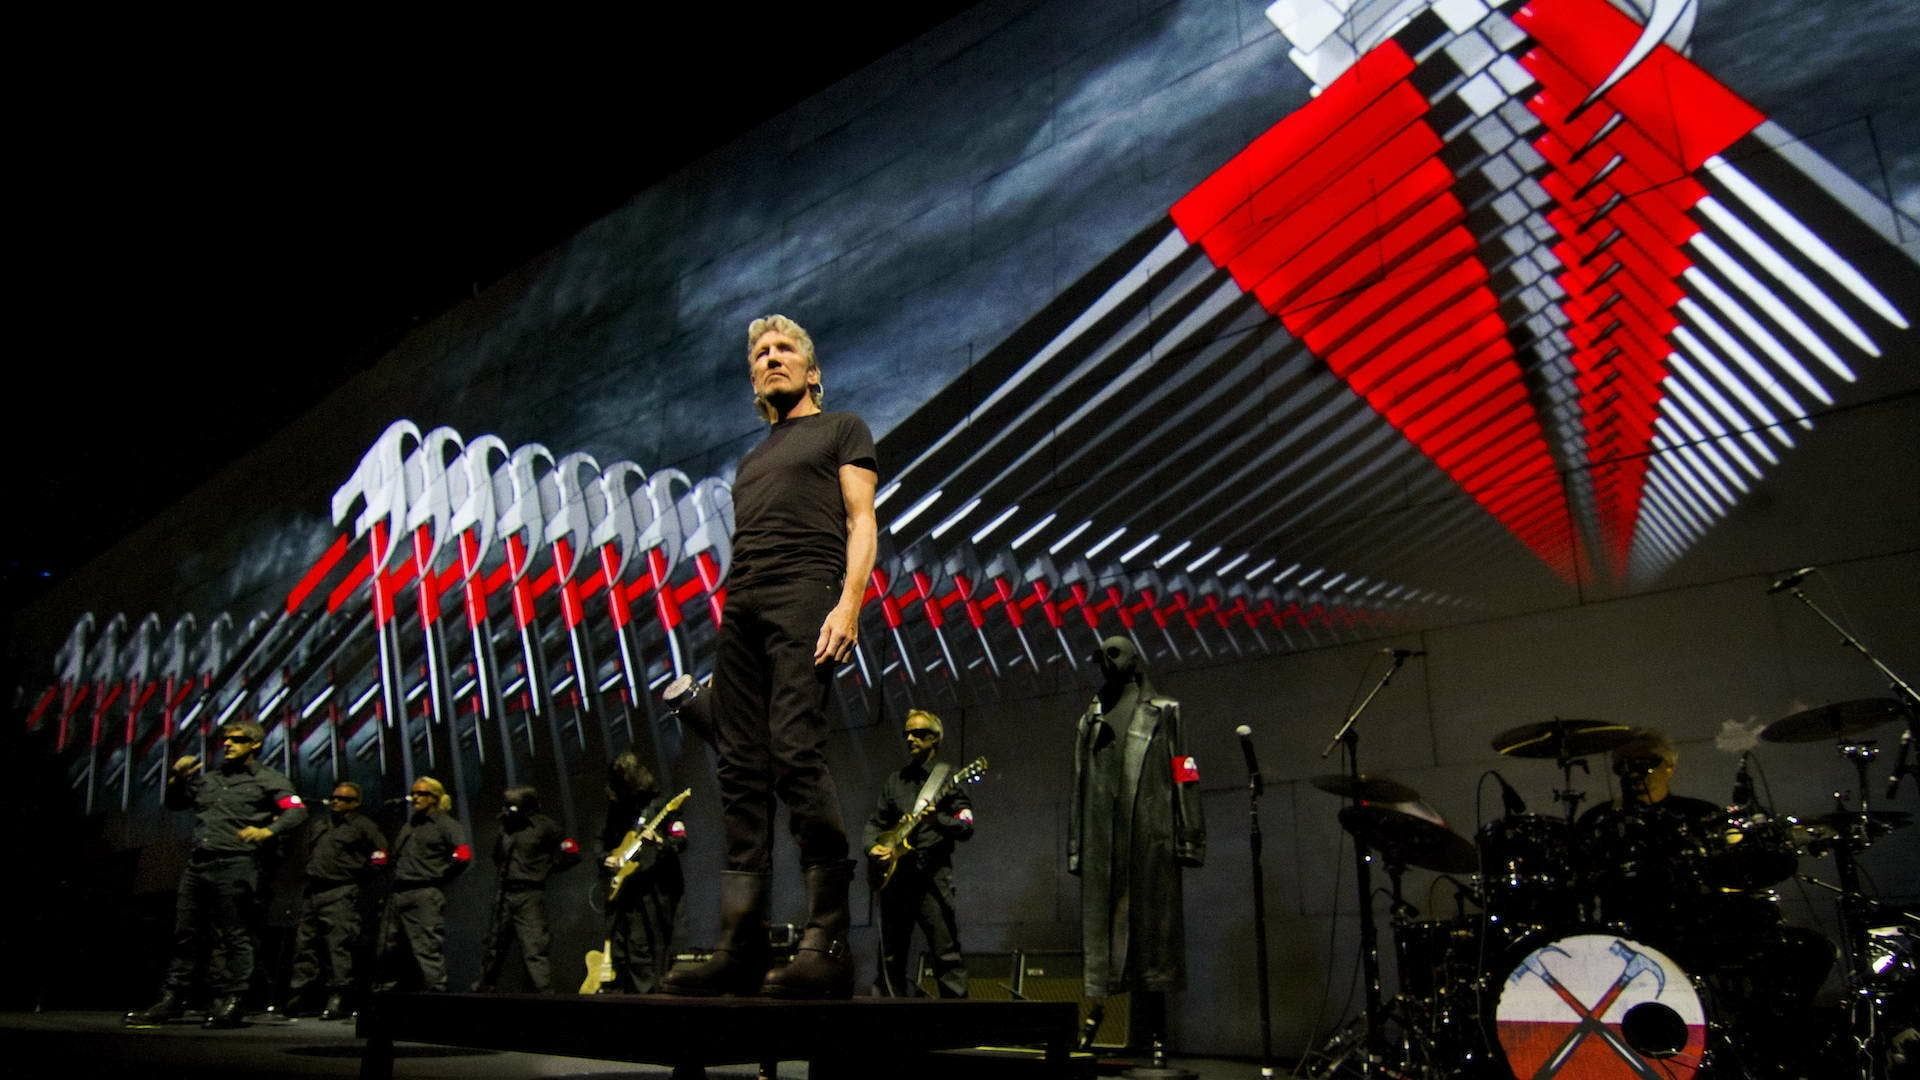 Cubierta de Roger Waters the Wall